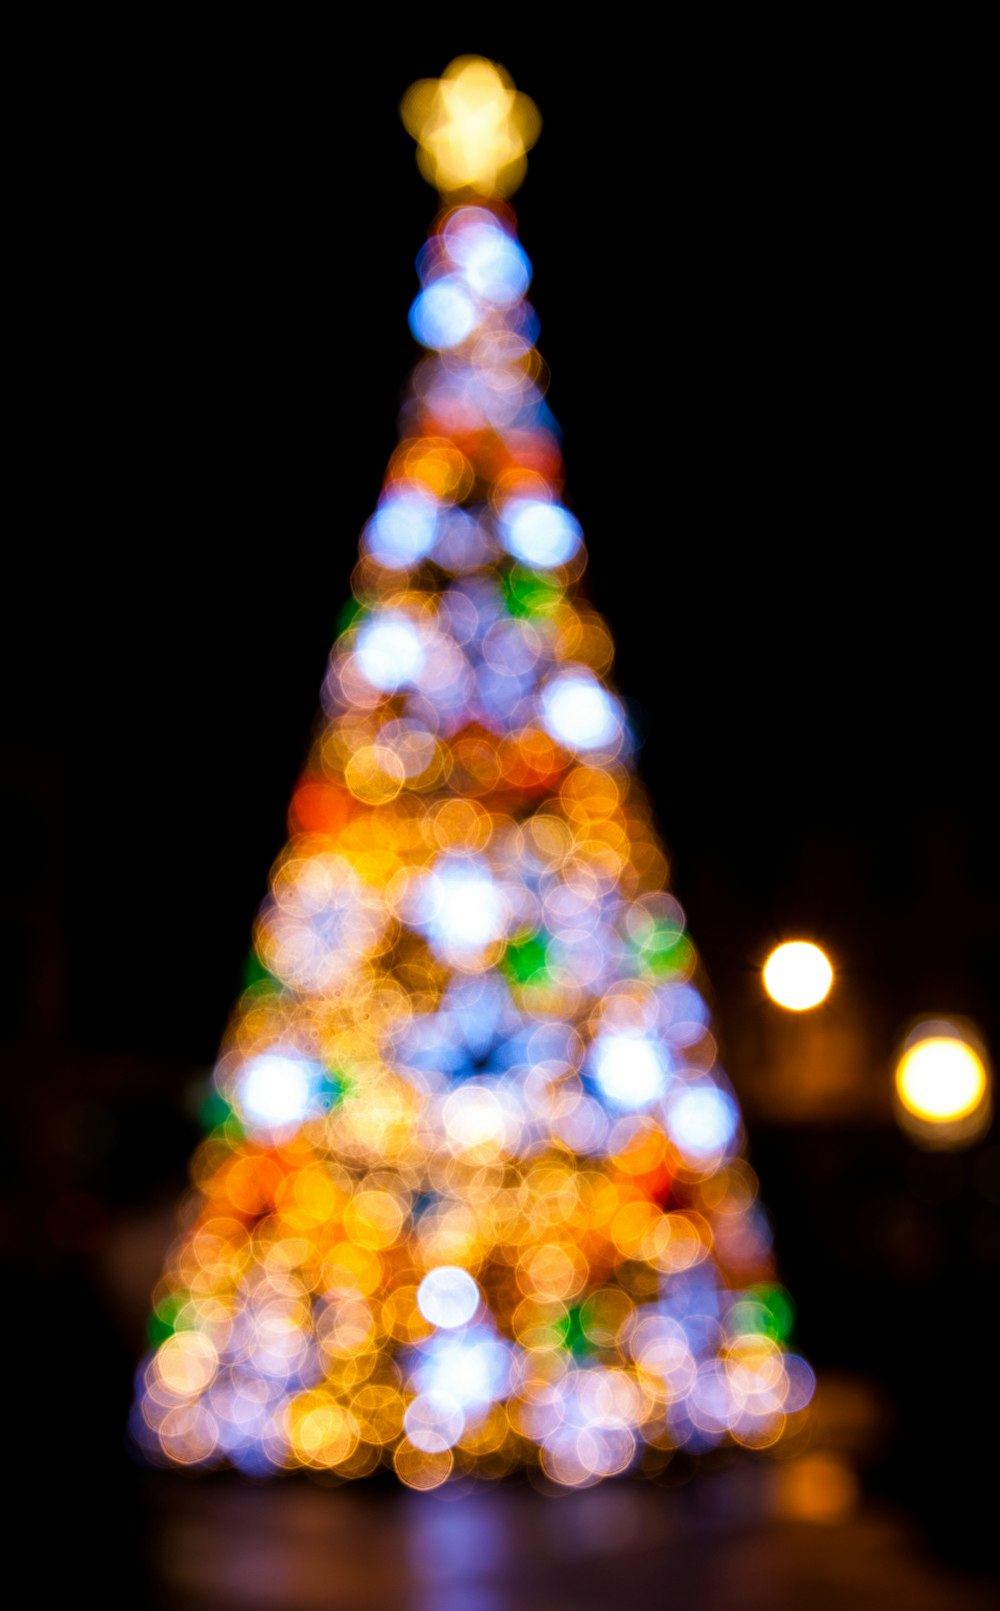 Ein hell erleuchteter Weihnachtsbaum im Dunkeln